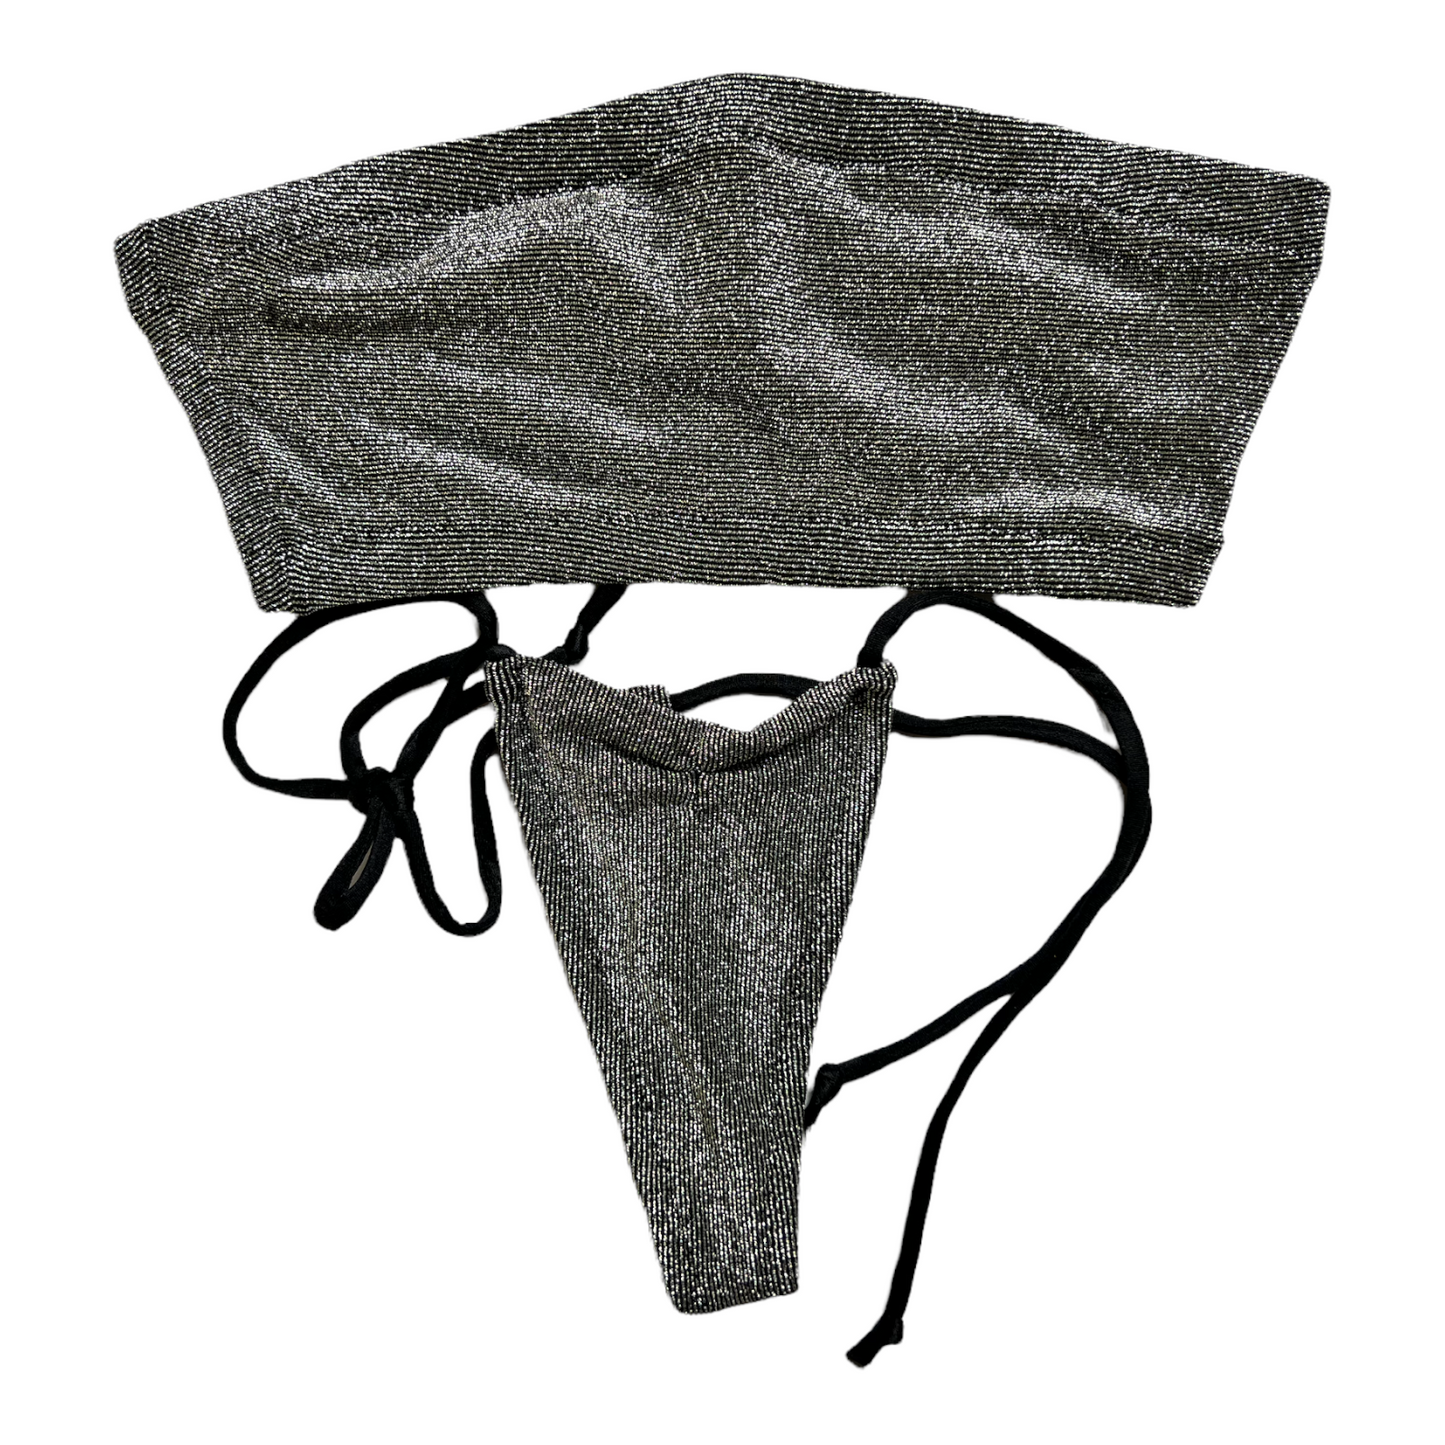 New Extreme Gear Black/Silver String Bralette Top/Thong Swim Set Sz: S